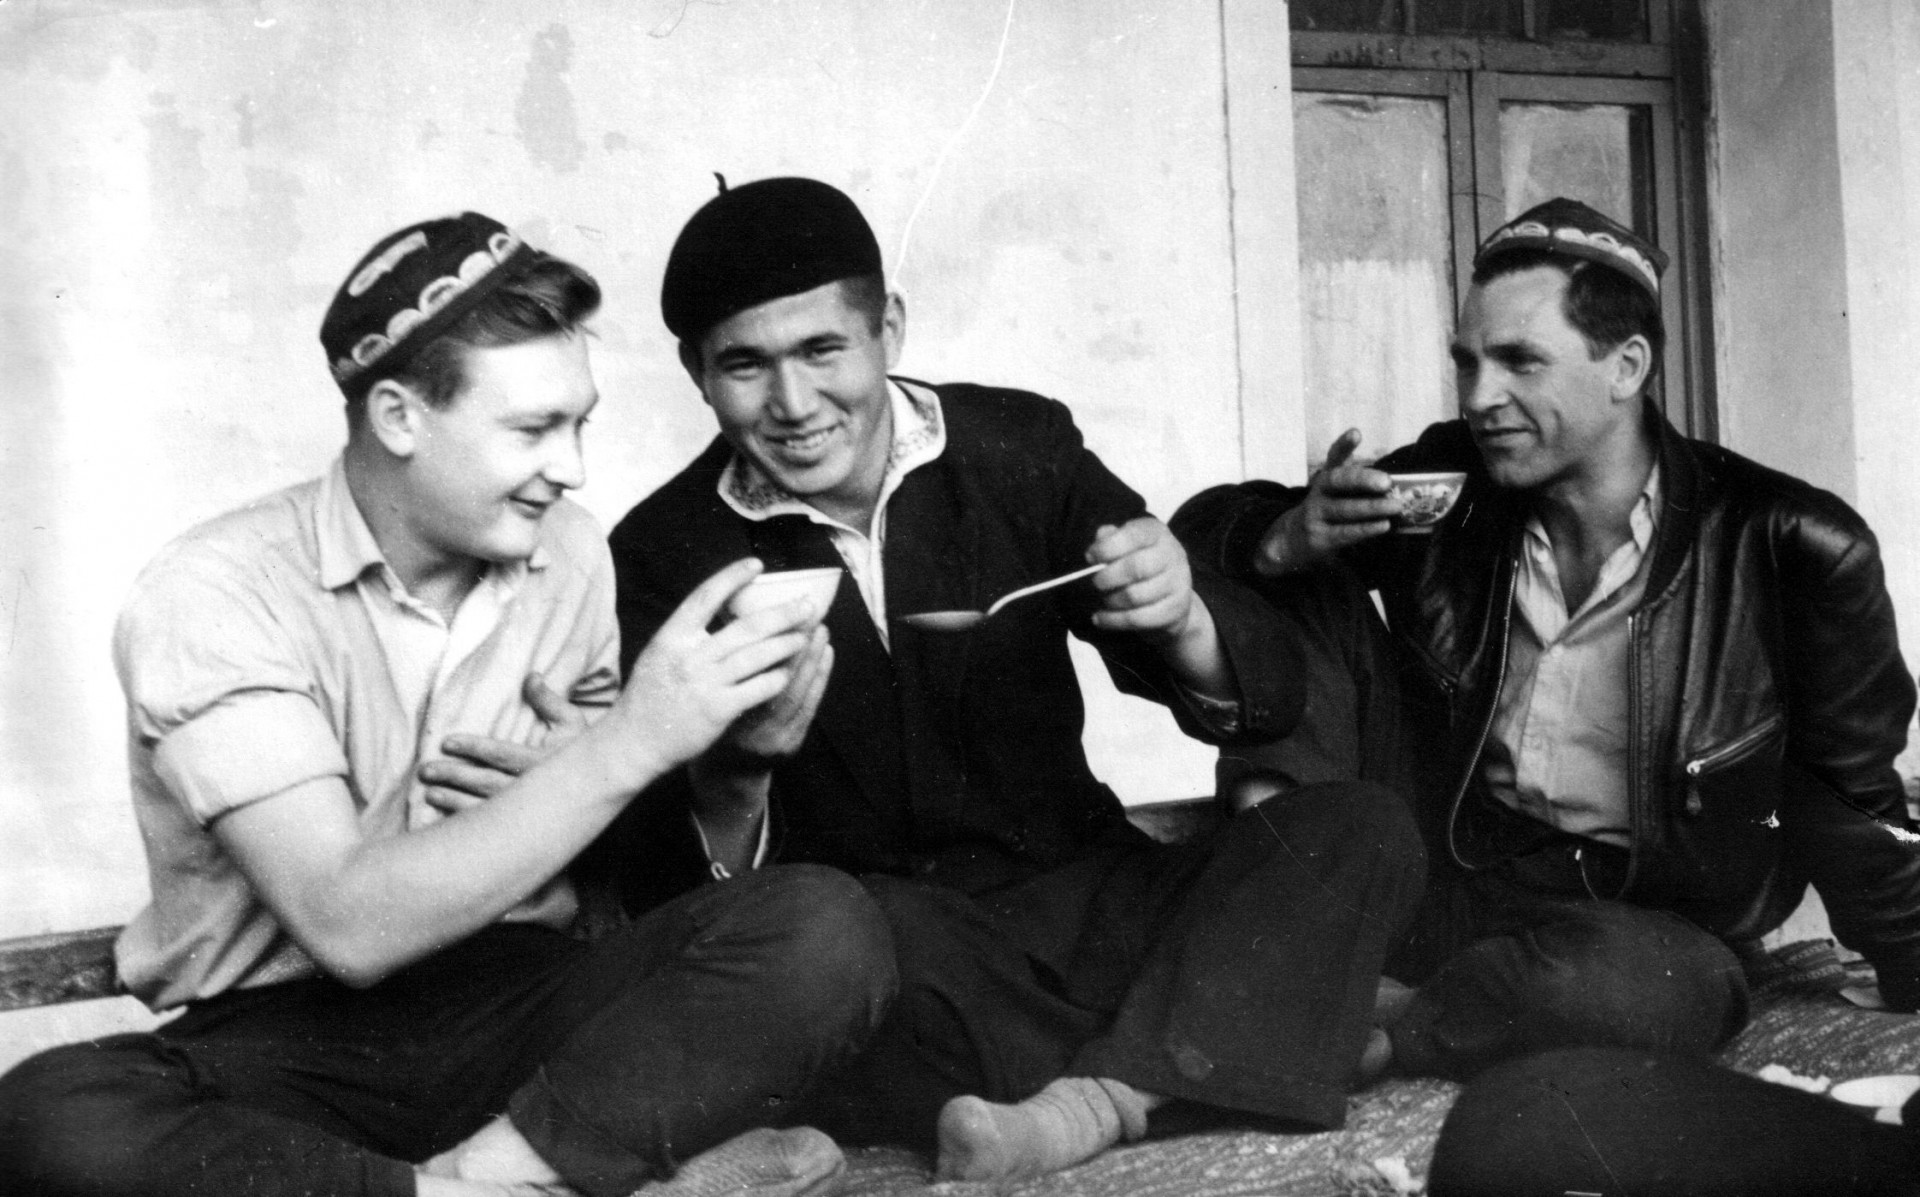 На фото: асс. оператора Валерий Никонов (слева) и оператор Георгий Земцов (справа). Узбекистан. 1960 год. Фото из личного архива Валерия Никонова.